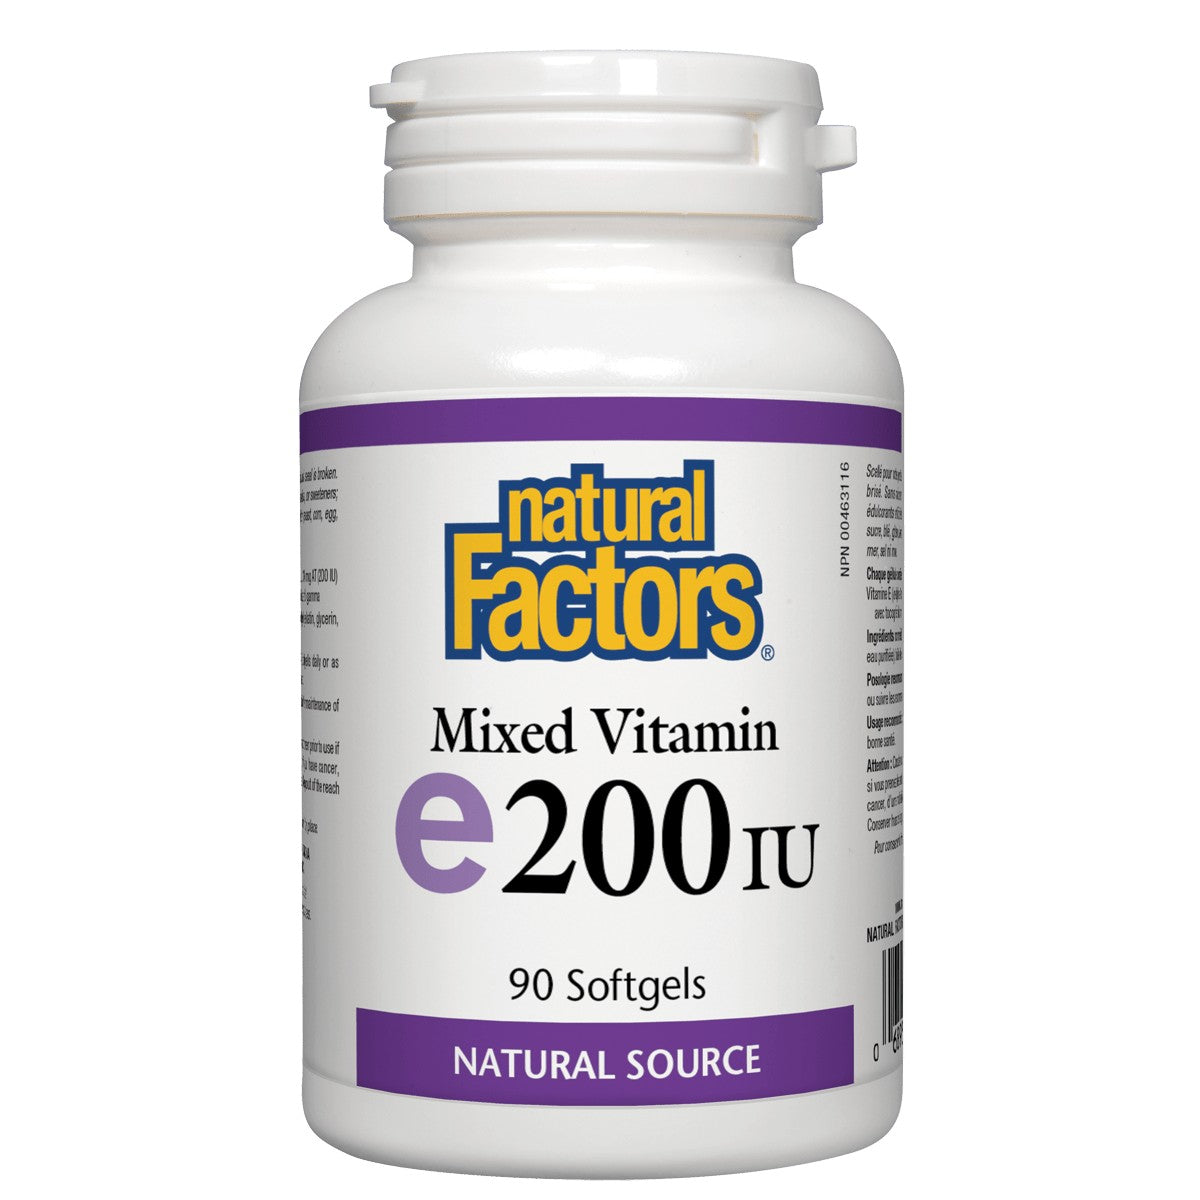 Natural Factors Vitamin E Mixed 200 IU, Antioxidant Support For Cellular Integrity, 90 Soft Gels